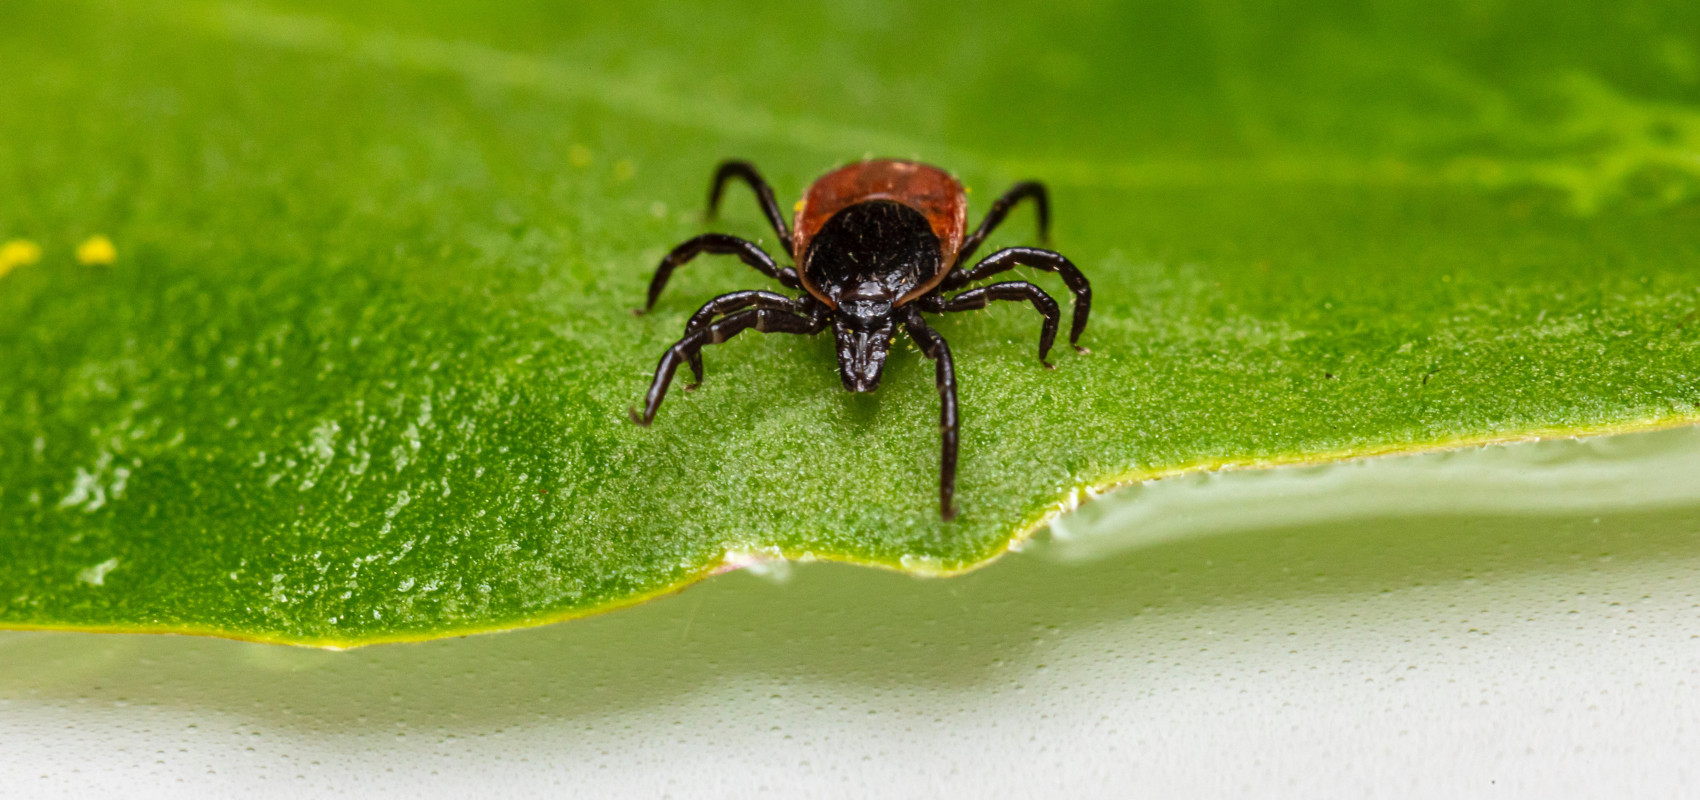 Tajniki skutecznej ochrony przed kleszczami i pajęczakami